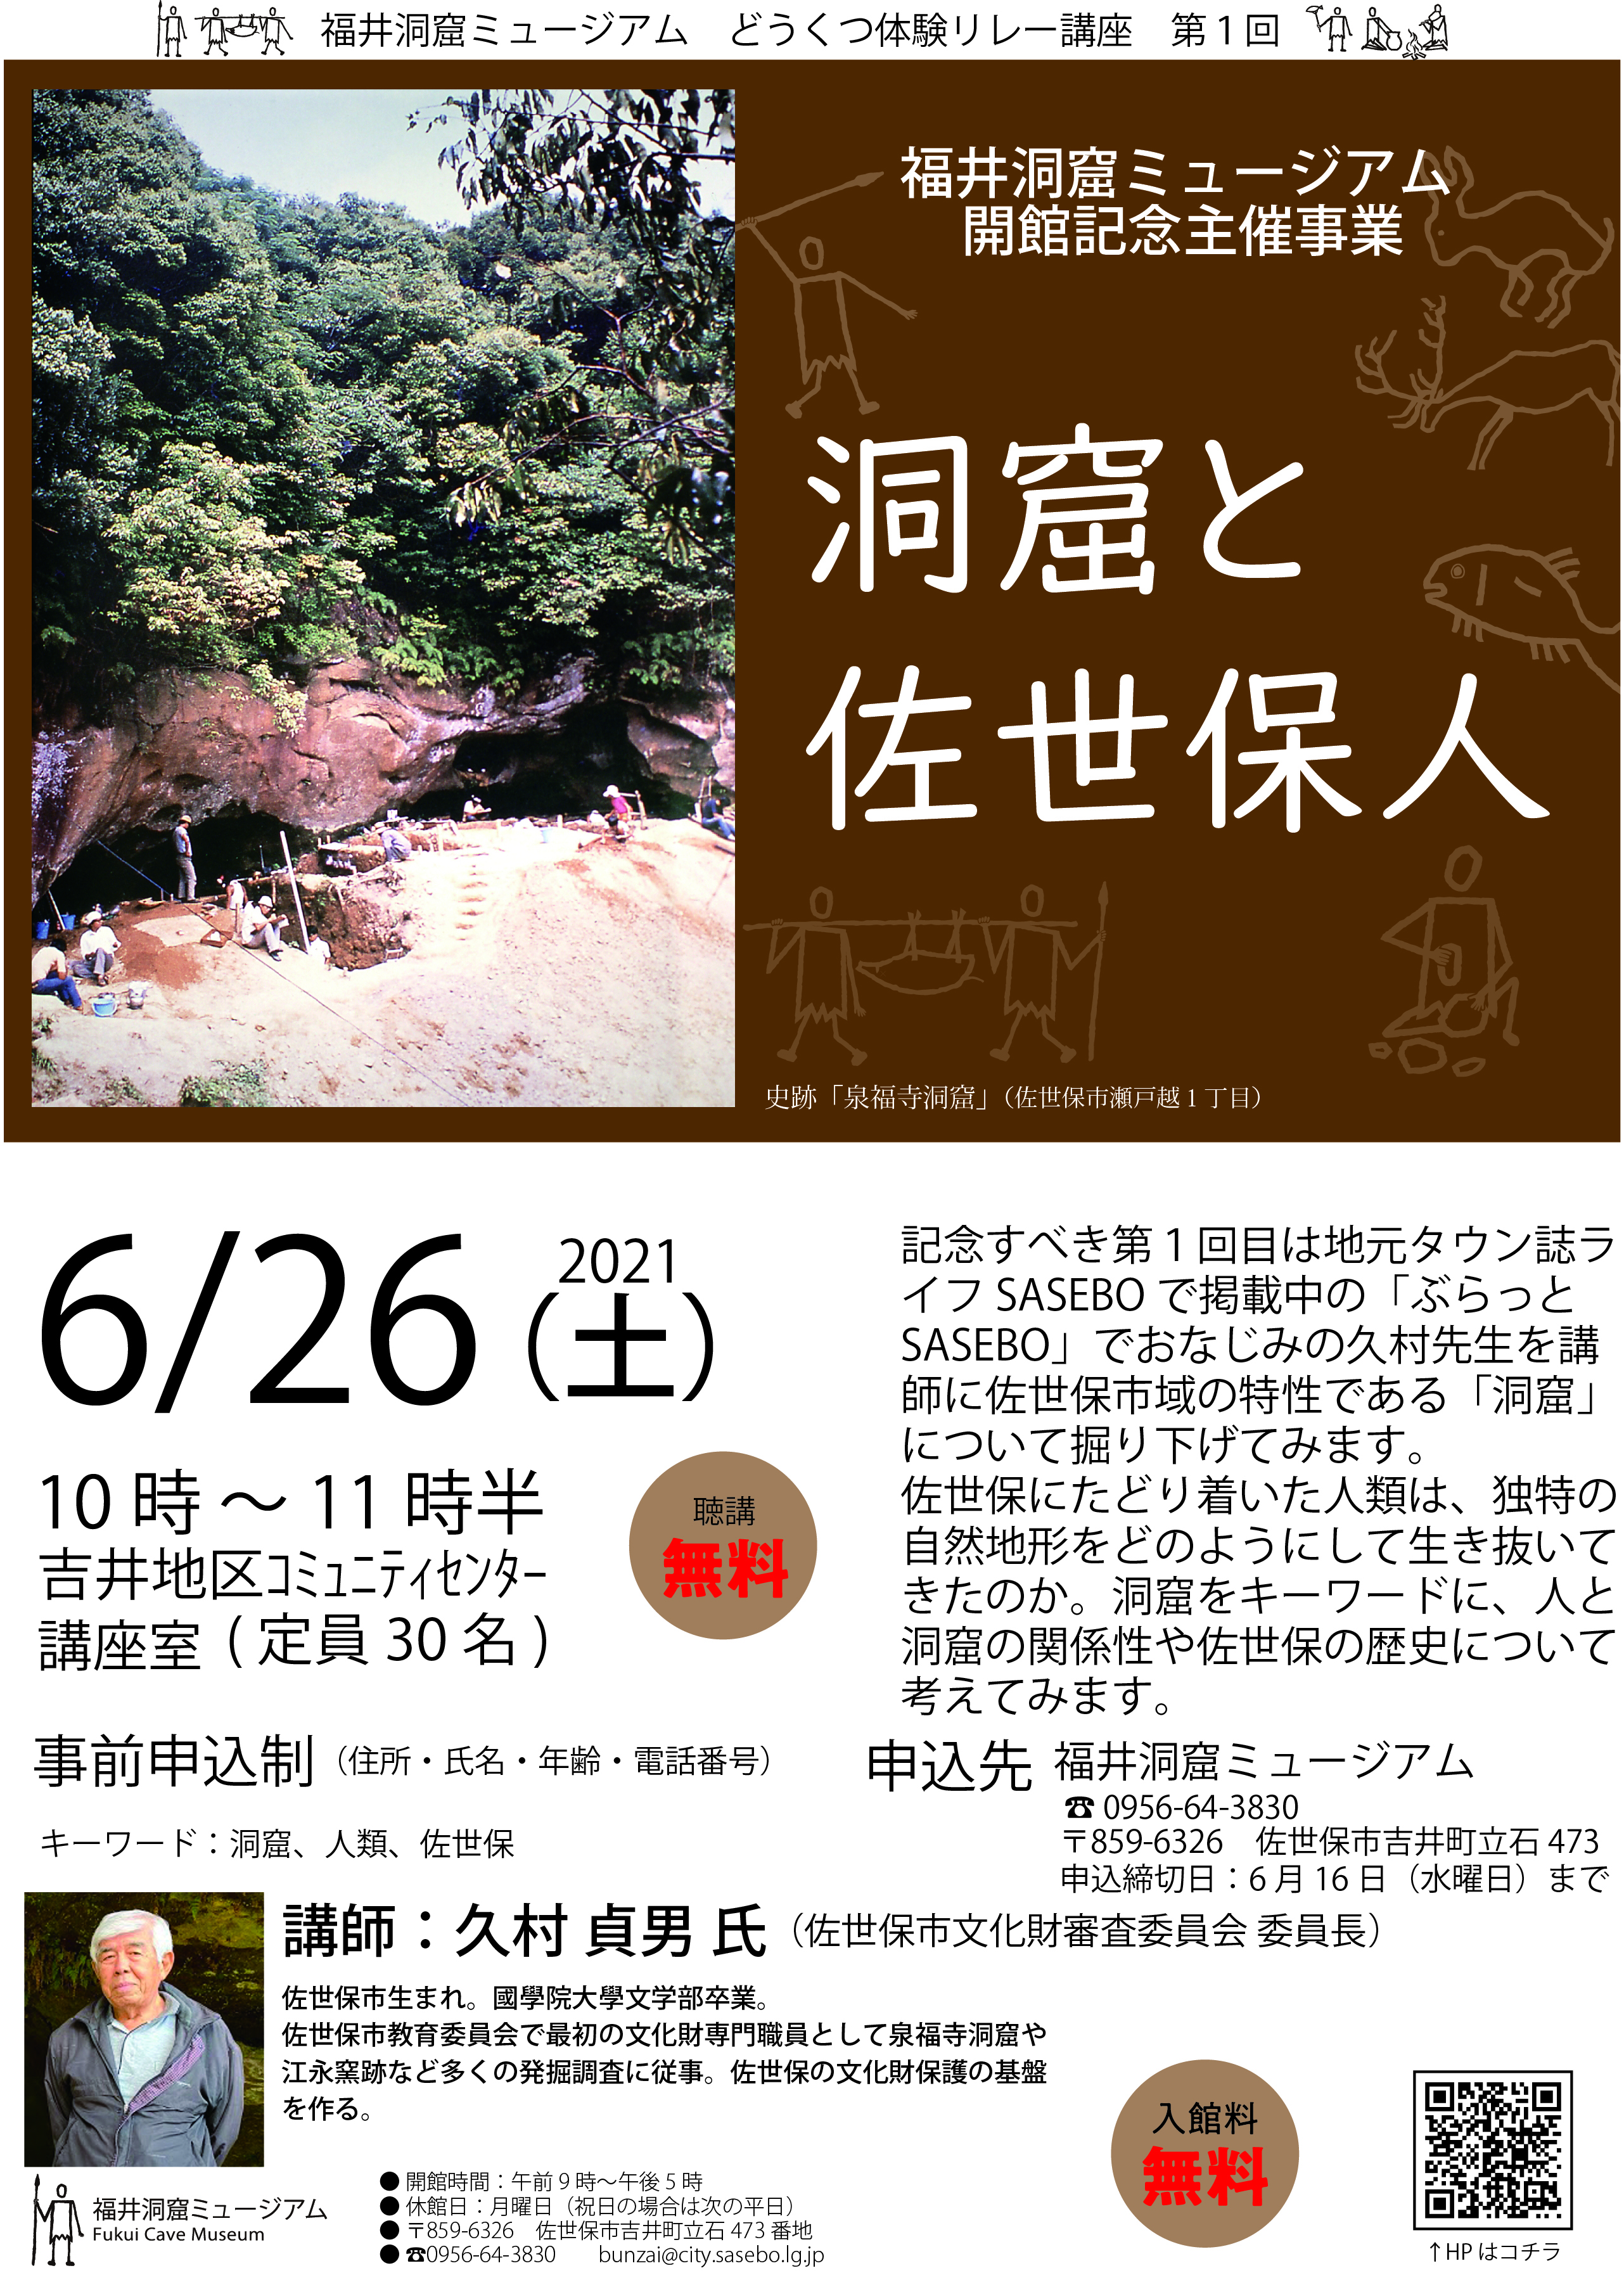 福井洞窟ミュージアム開館主催記念事業のチラシ